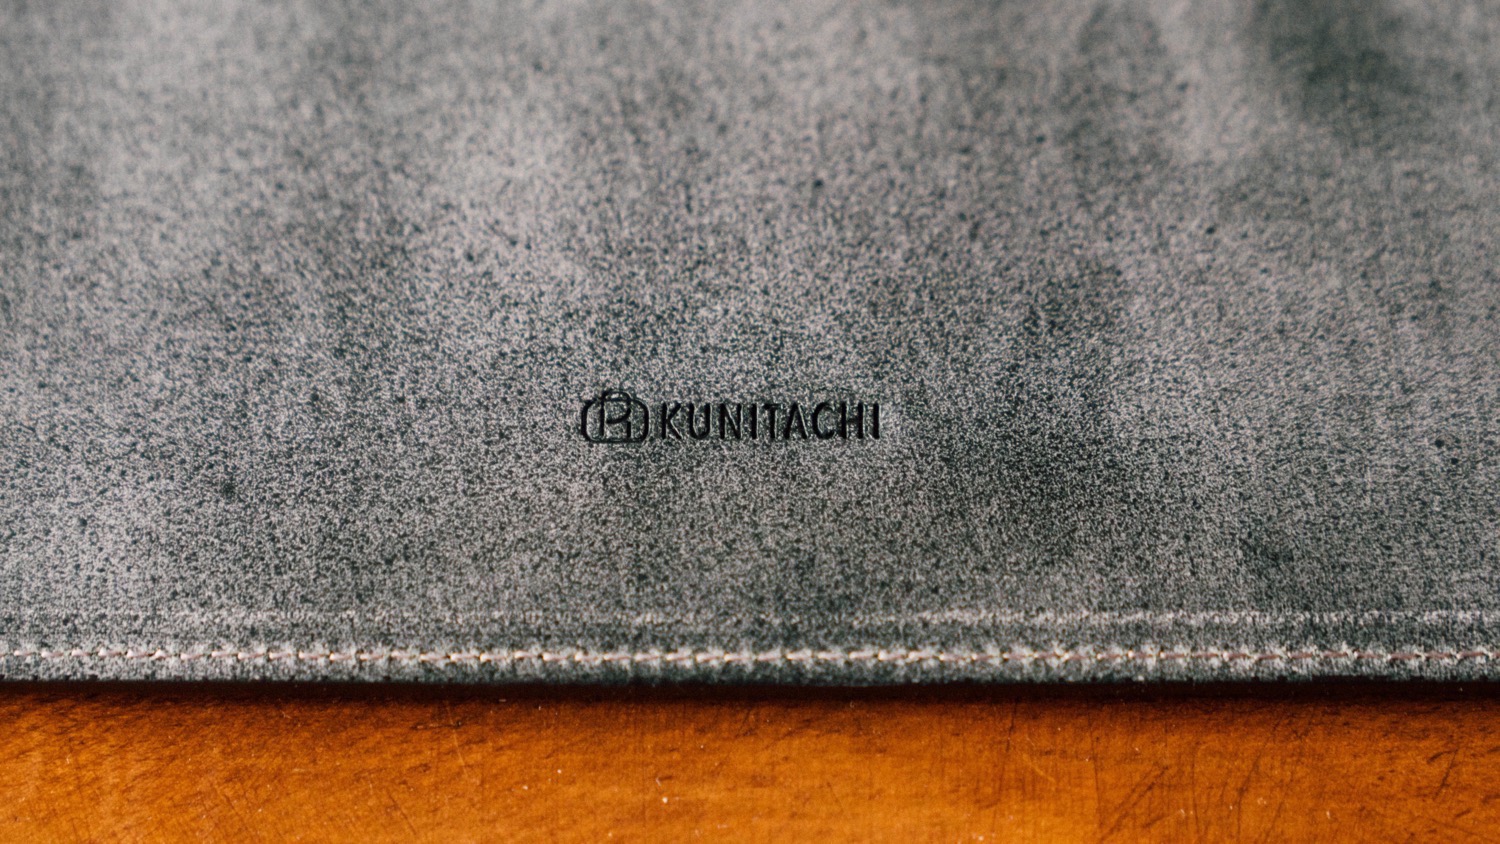 Kunitachi bridle leather 3